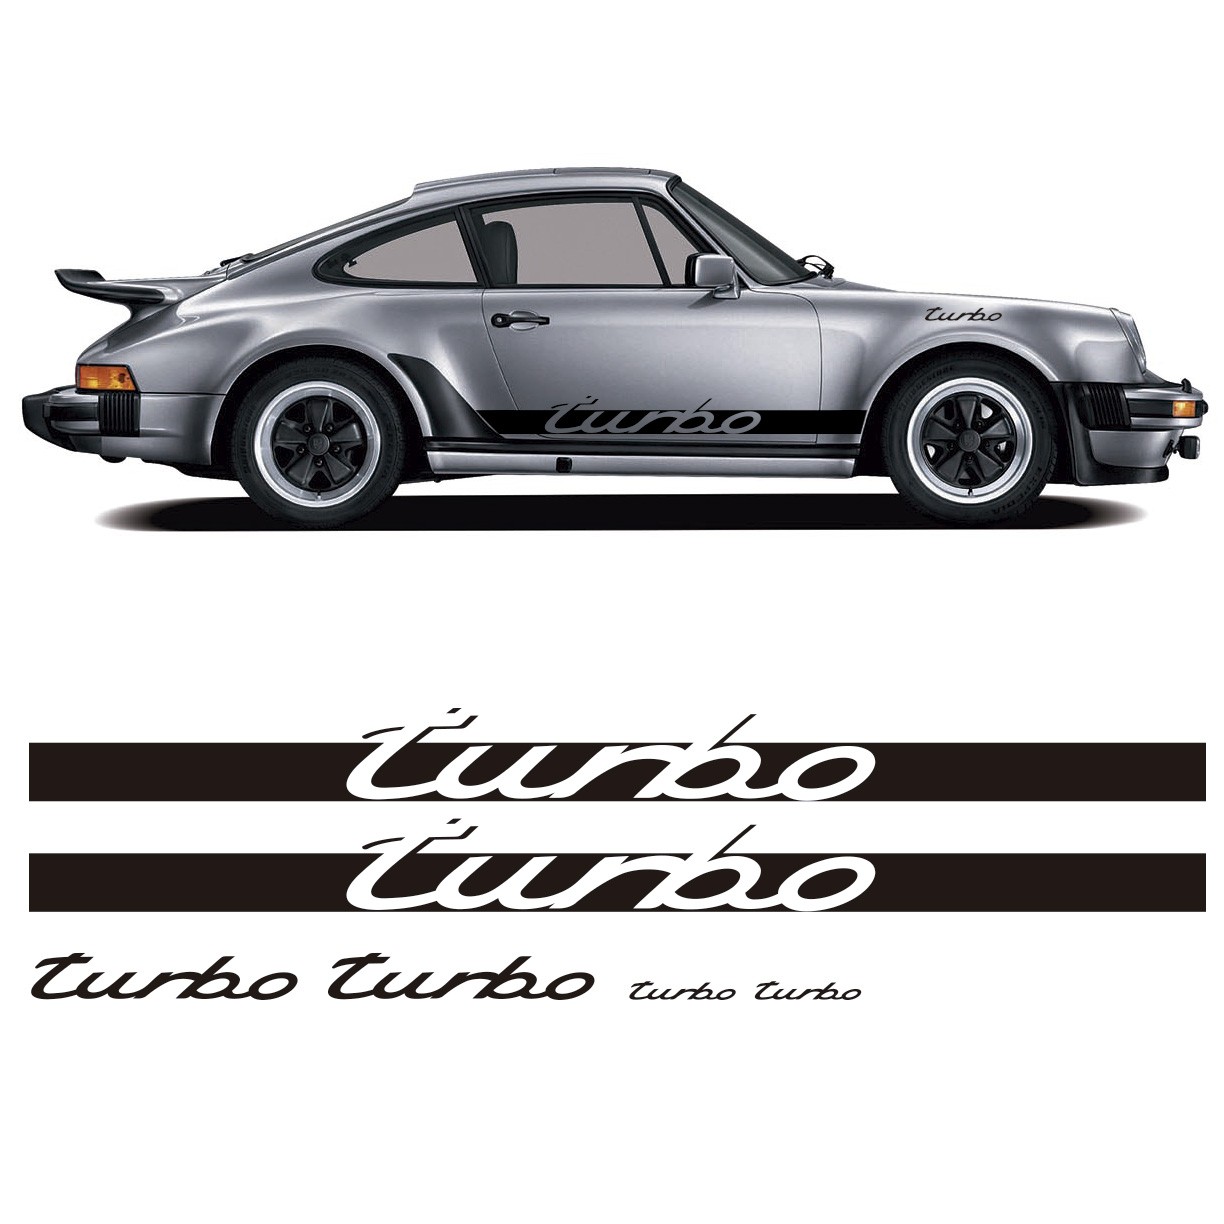 Vinyl side stripes replica porsche 911 classic Turbo